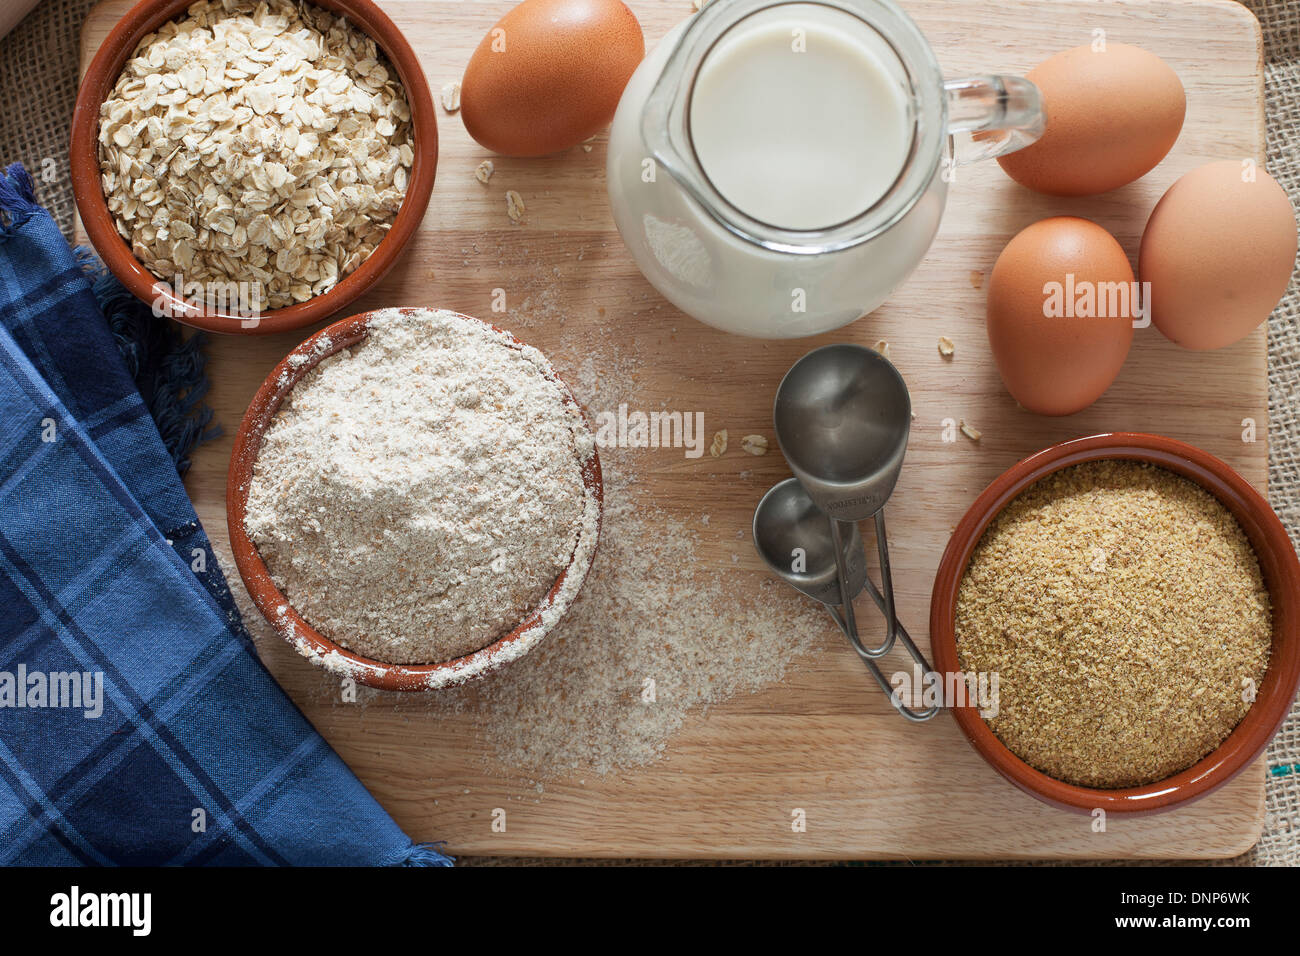 Ingredientes para grano entero pan sano, la harina de trigo integral, copos de avena y germen de trigo con leche y huevos. Foto de stock